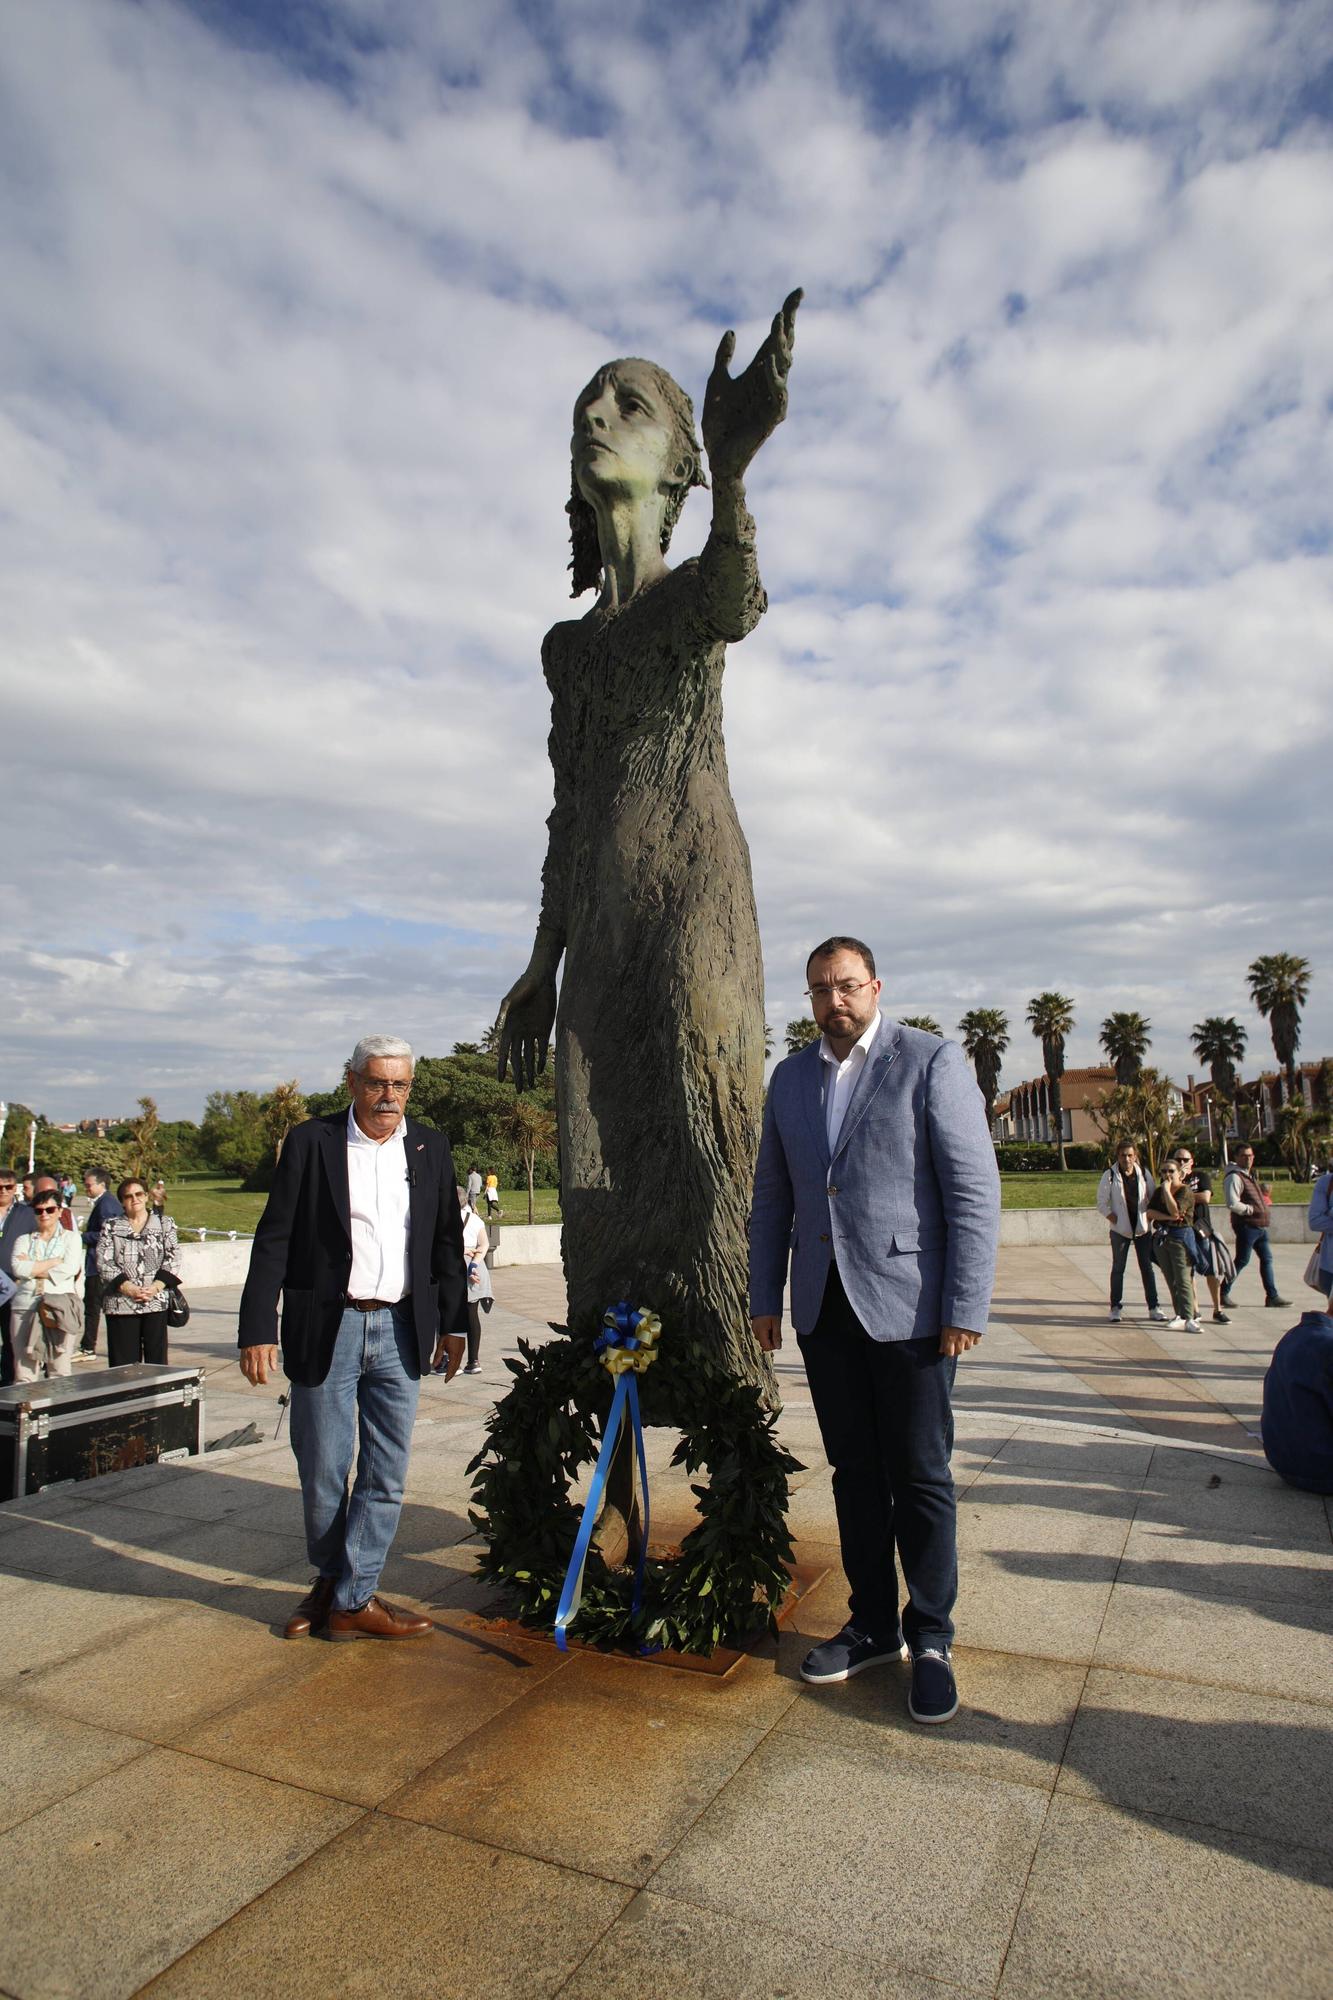 EN IMÁGENES:  Así fue el homenaje a los exiliados por la Guerra Civil y la posterior represión franquista organizado por los socialistas de Gijón junto a la estatua de "La Madre del Emigrante"